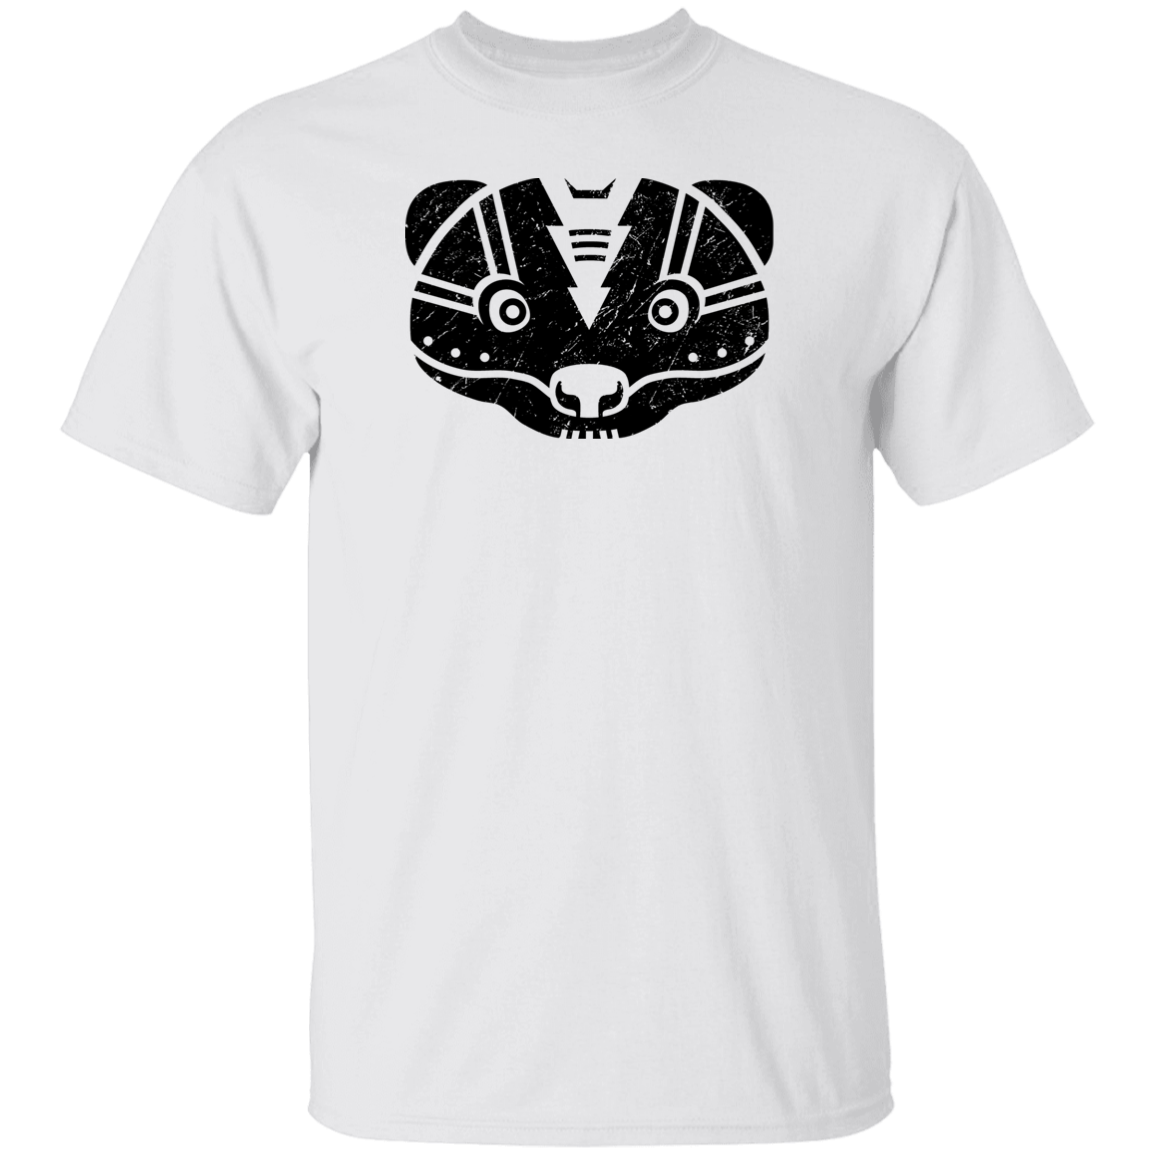 Black Distressed Emblem T-Shirt for Kids (Skunk/Stinker)